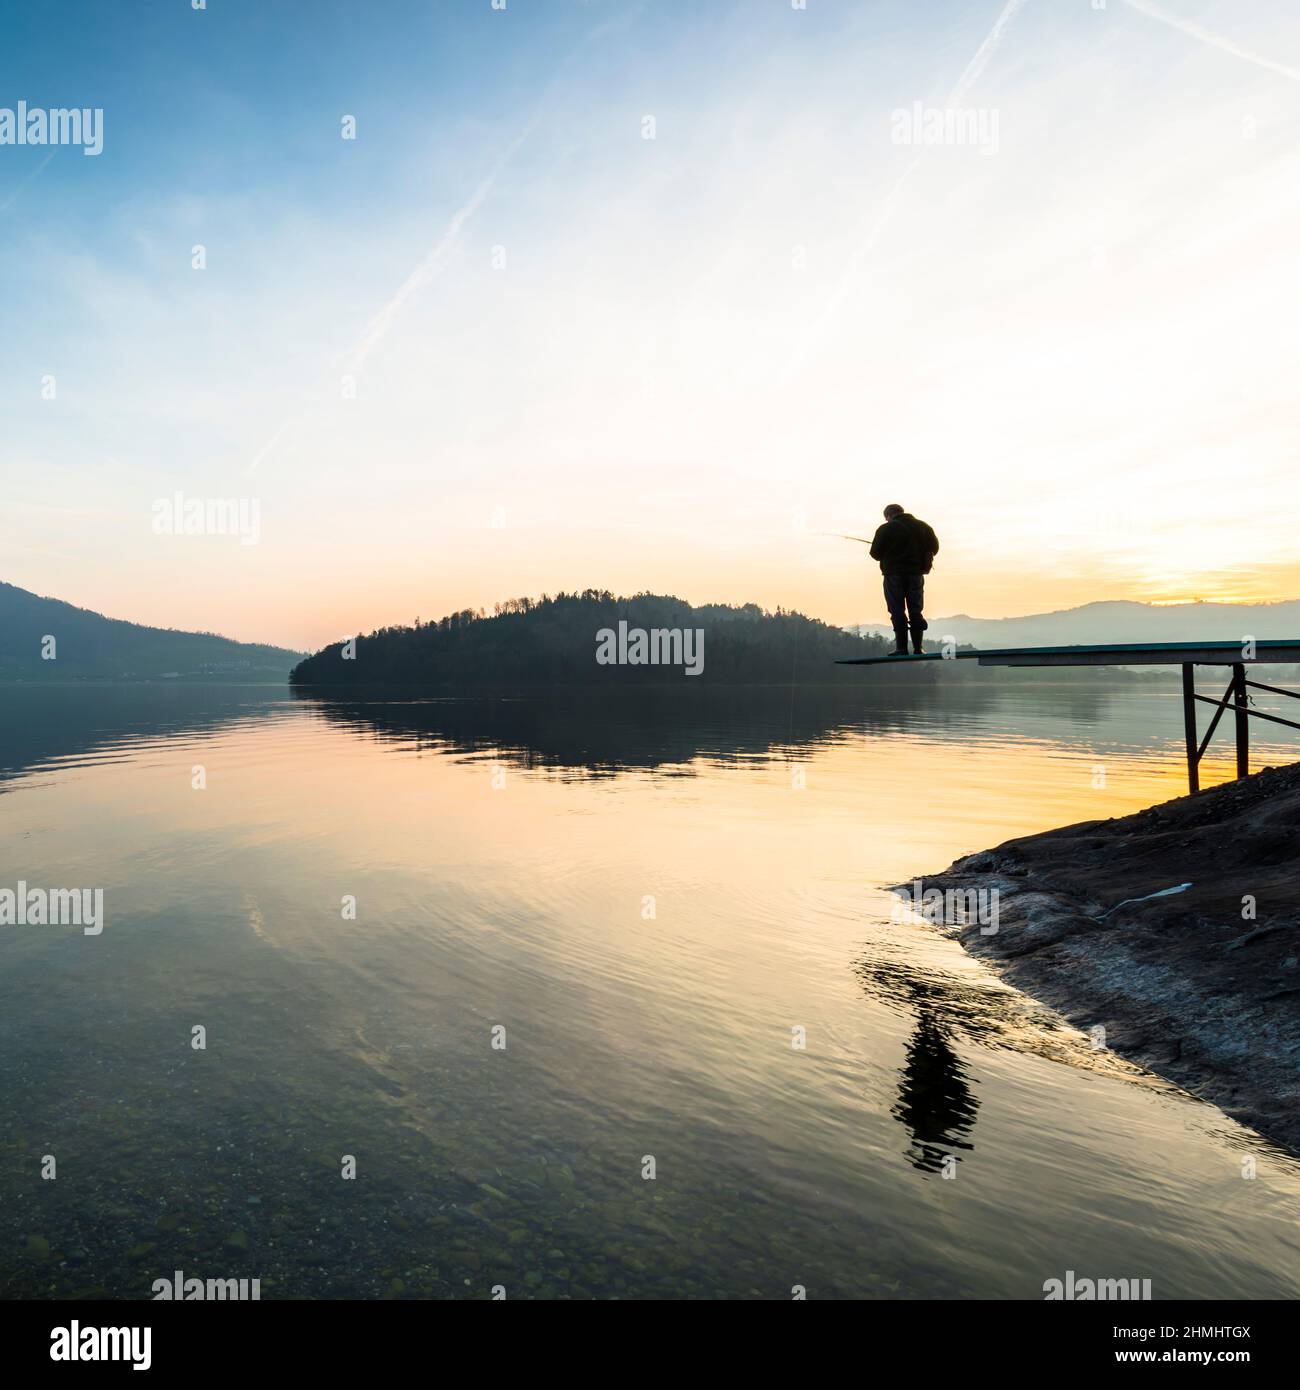 Ein Mann fängt einen Fisch. Fröhliche entspannte Stunden allein mit der Natur. Landschaft eines Bergsees. Abendlicht der untergehenden Sonne. Männliche Silhouette mit einer Fi Stockfoto